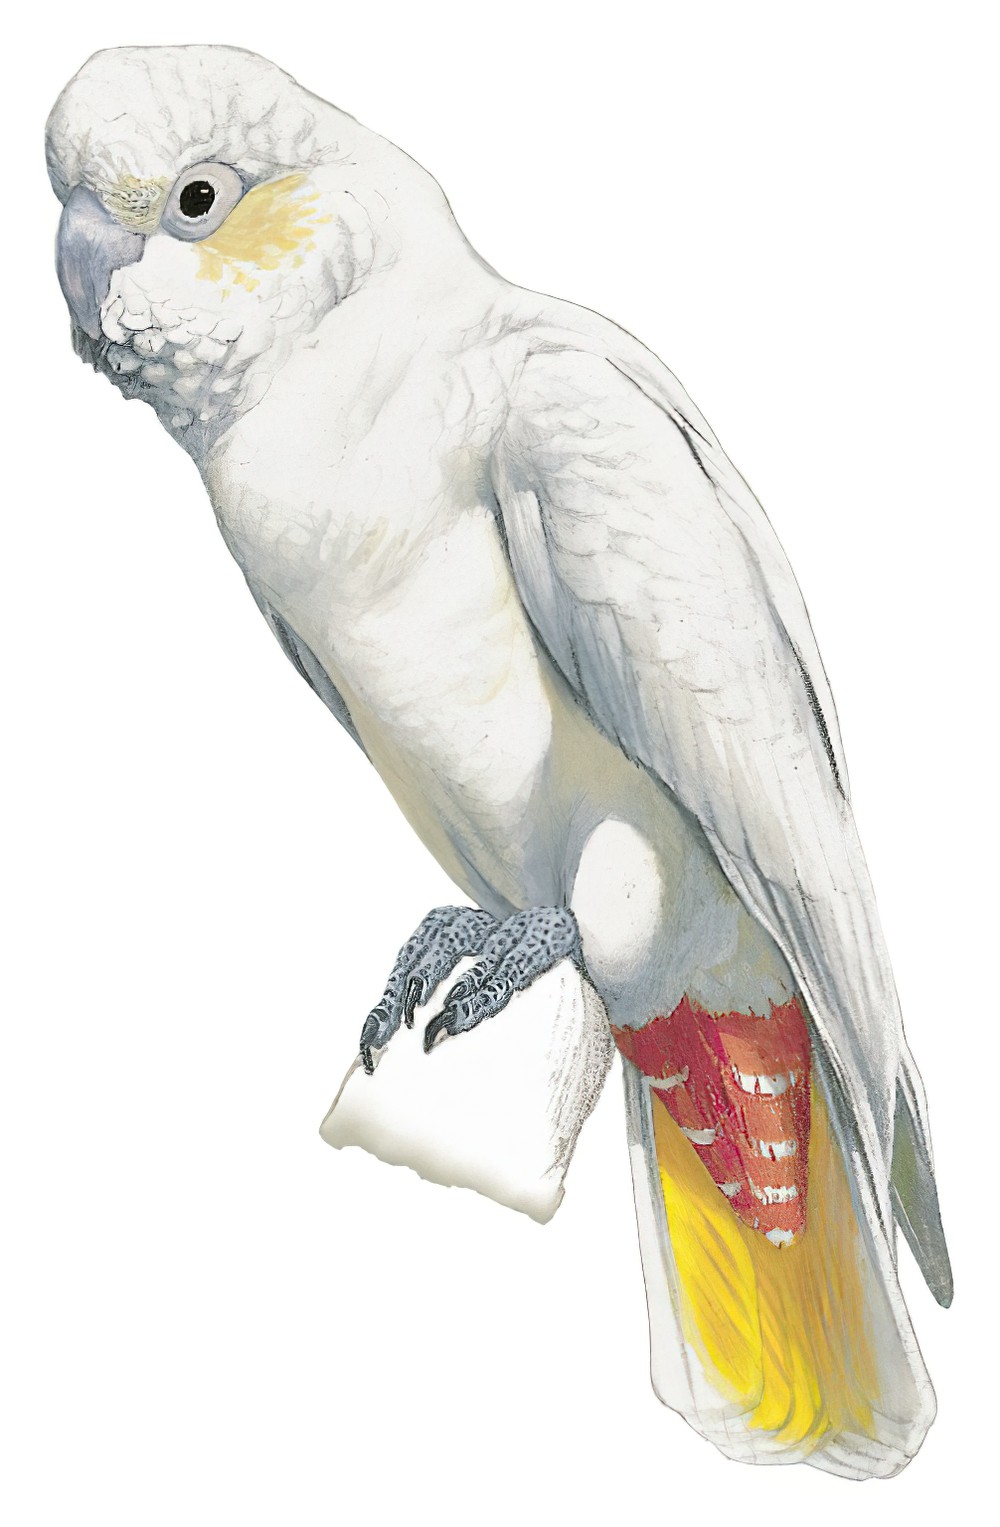 Philippine Cockatoo / Cacatua haematuropygia